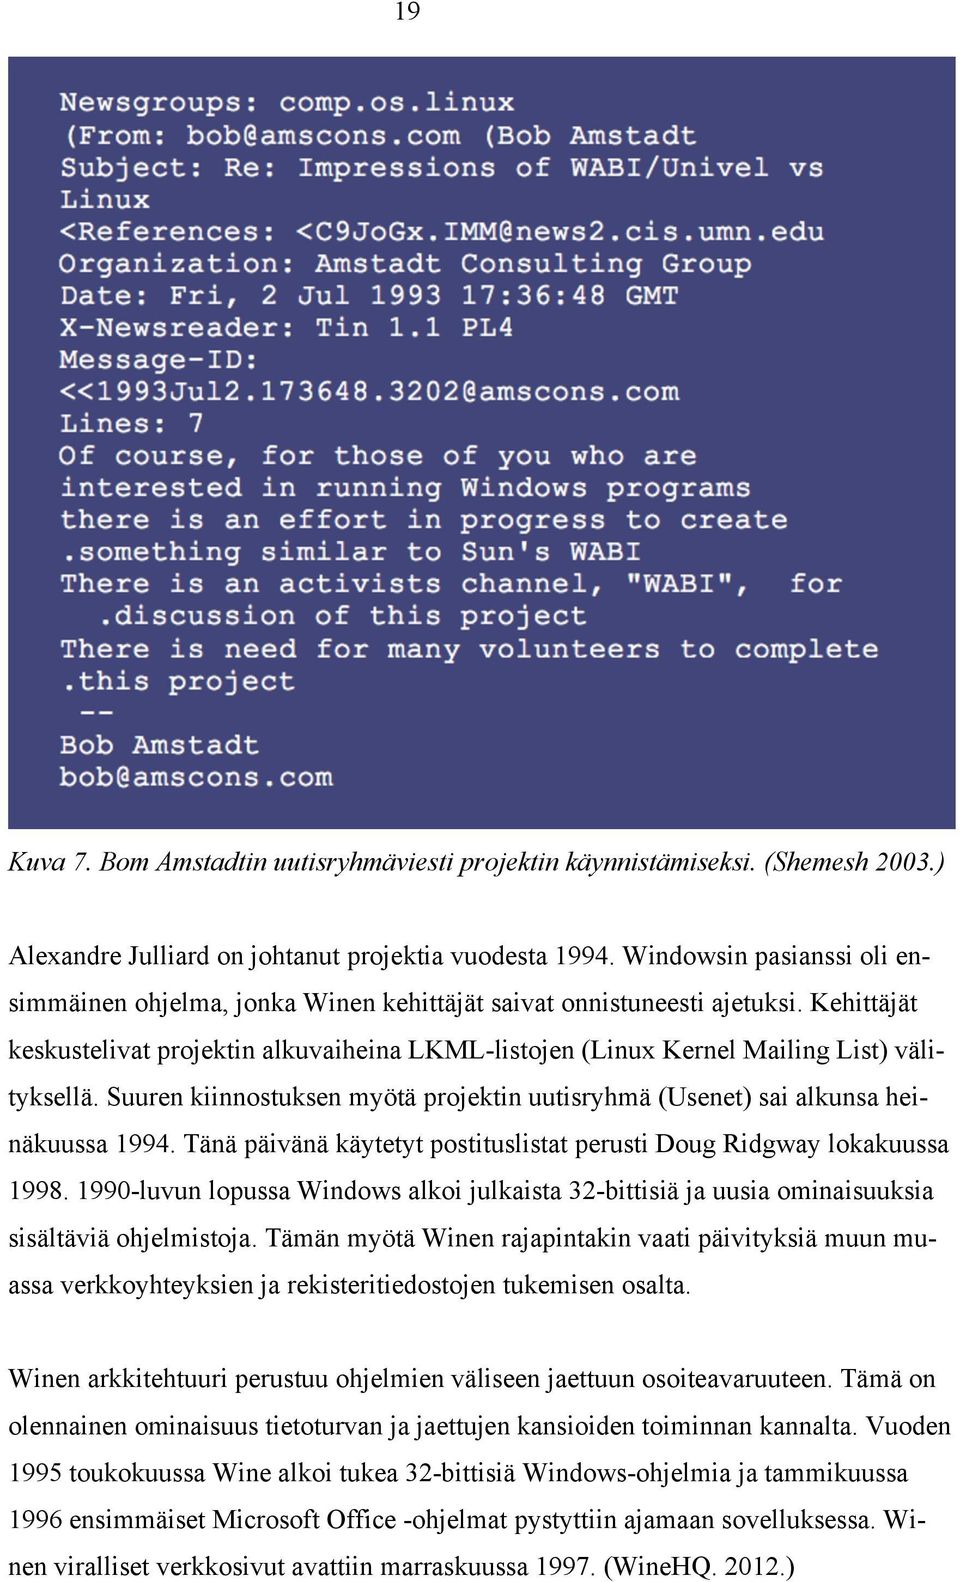 Kehittäjät keskustelivat projektin alkuvaiheina LKML-listojen (Linux Kernel Mailing List) välityksellä. Suuren kiinnostuksen myötä projektin uutisryhmä (Usenet) sai alkunsa heinäkuussa 1994.